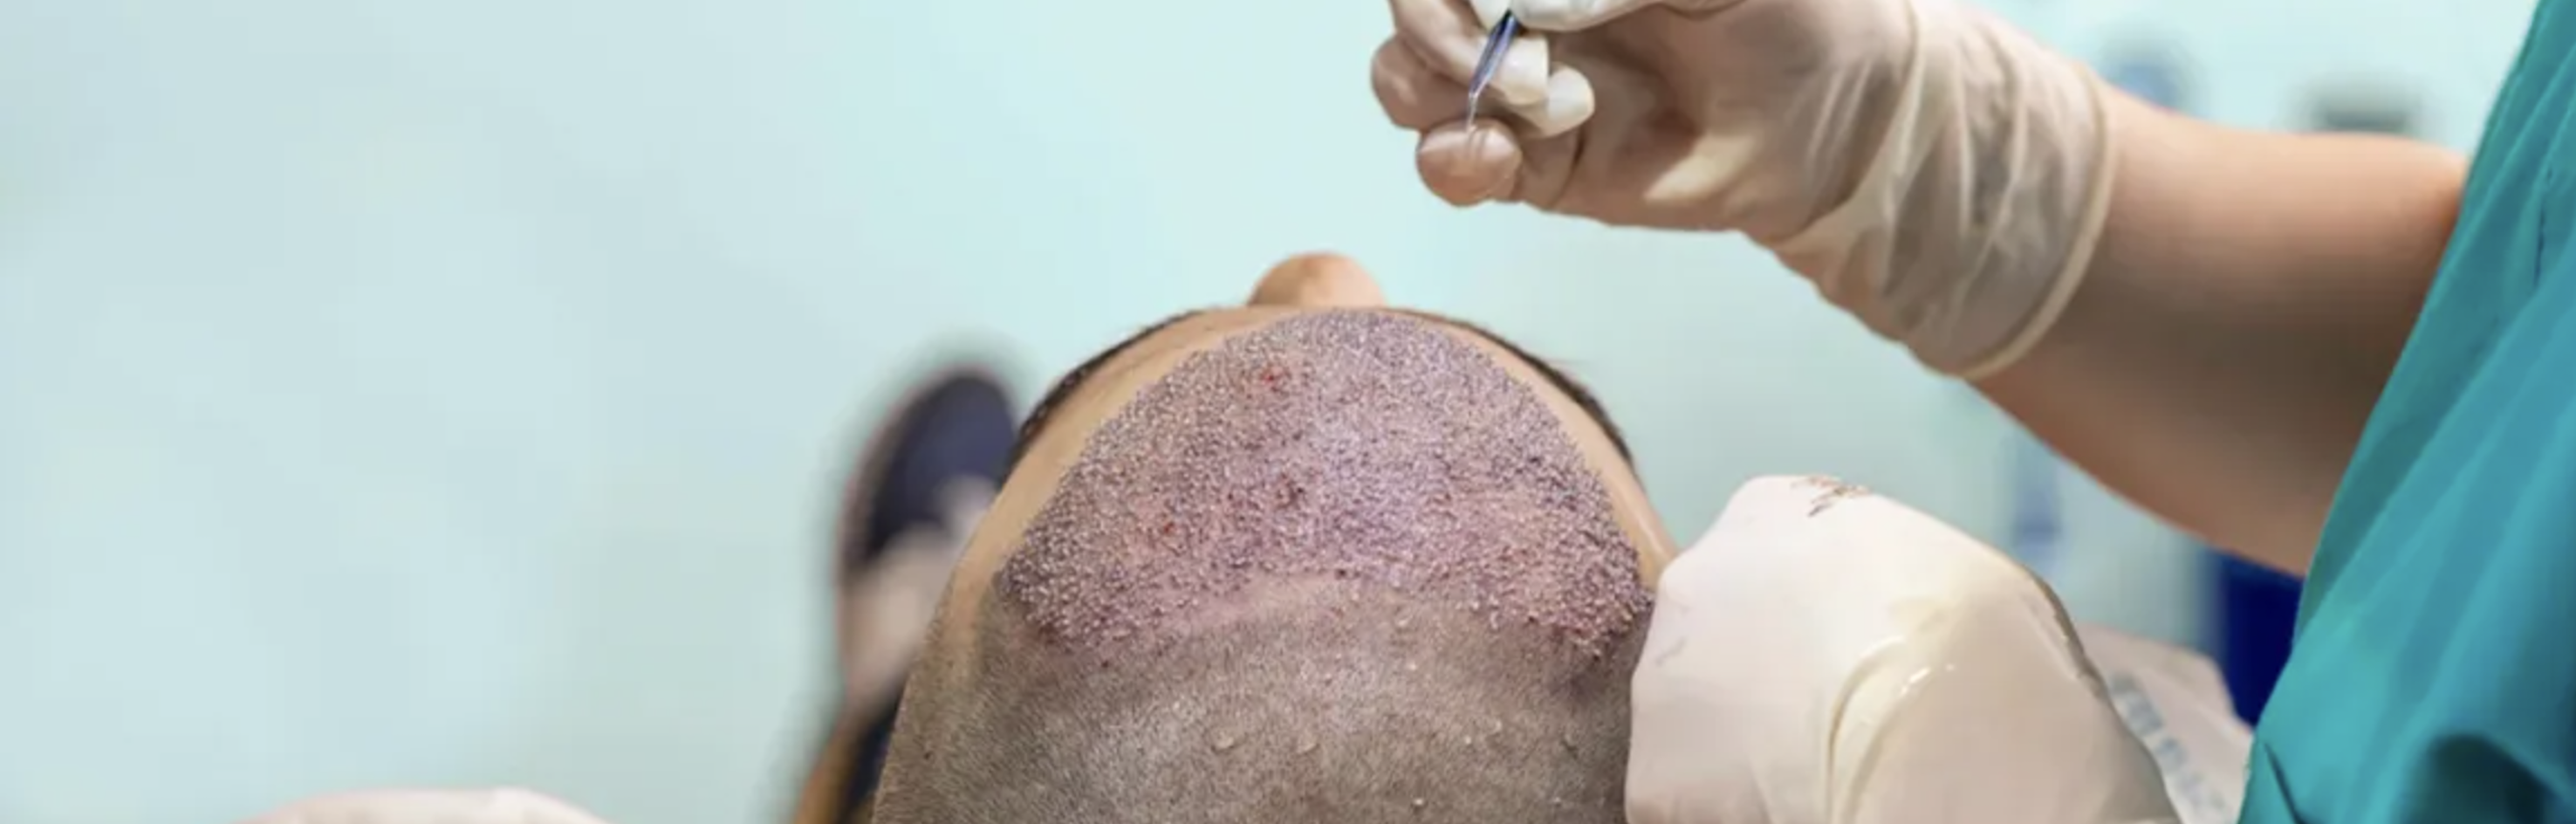 FUE метод пересадки волос в Турции